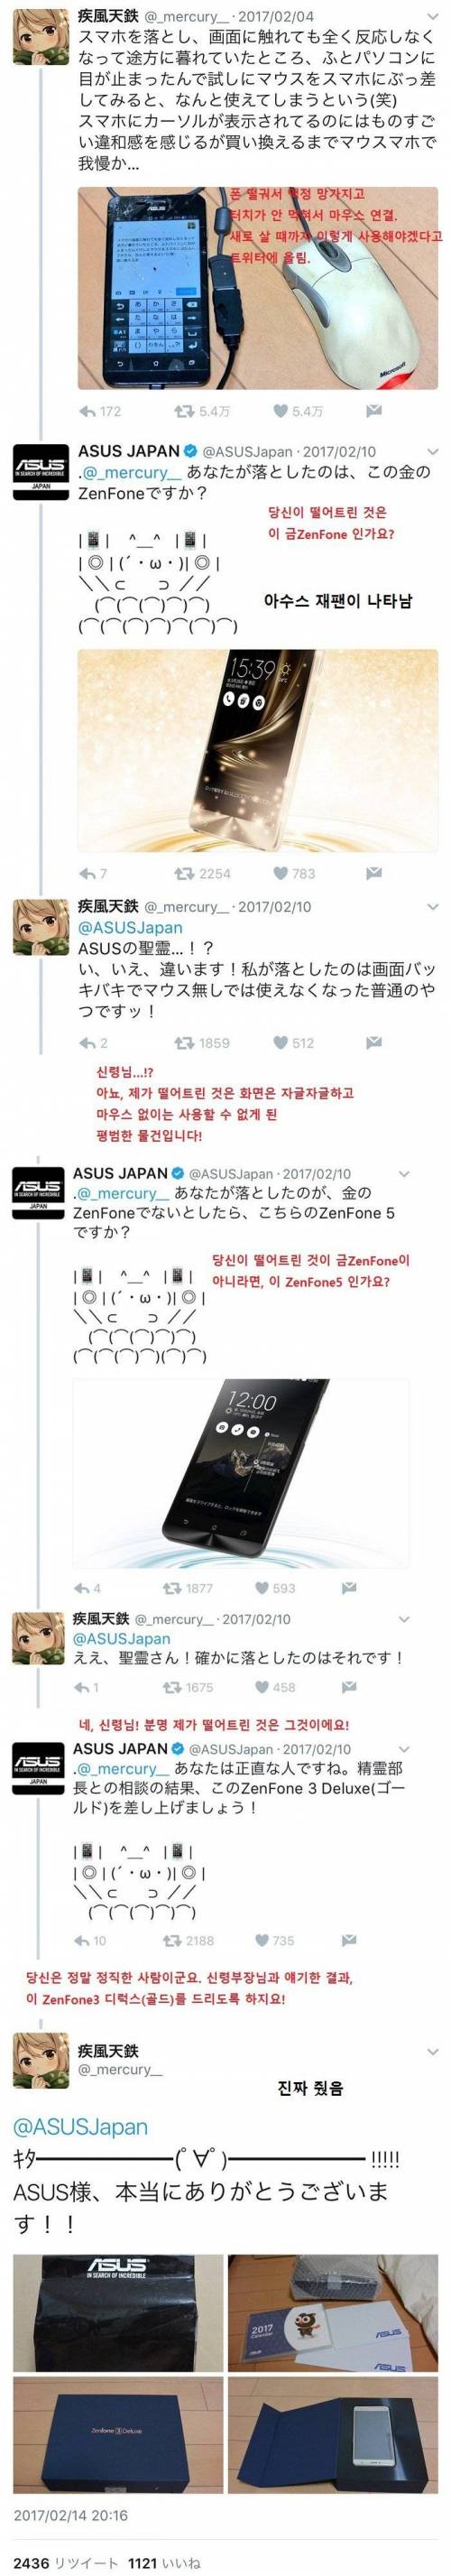 일본 ASUS의 마케팅 .jpg